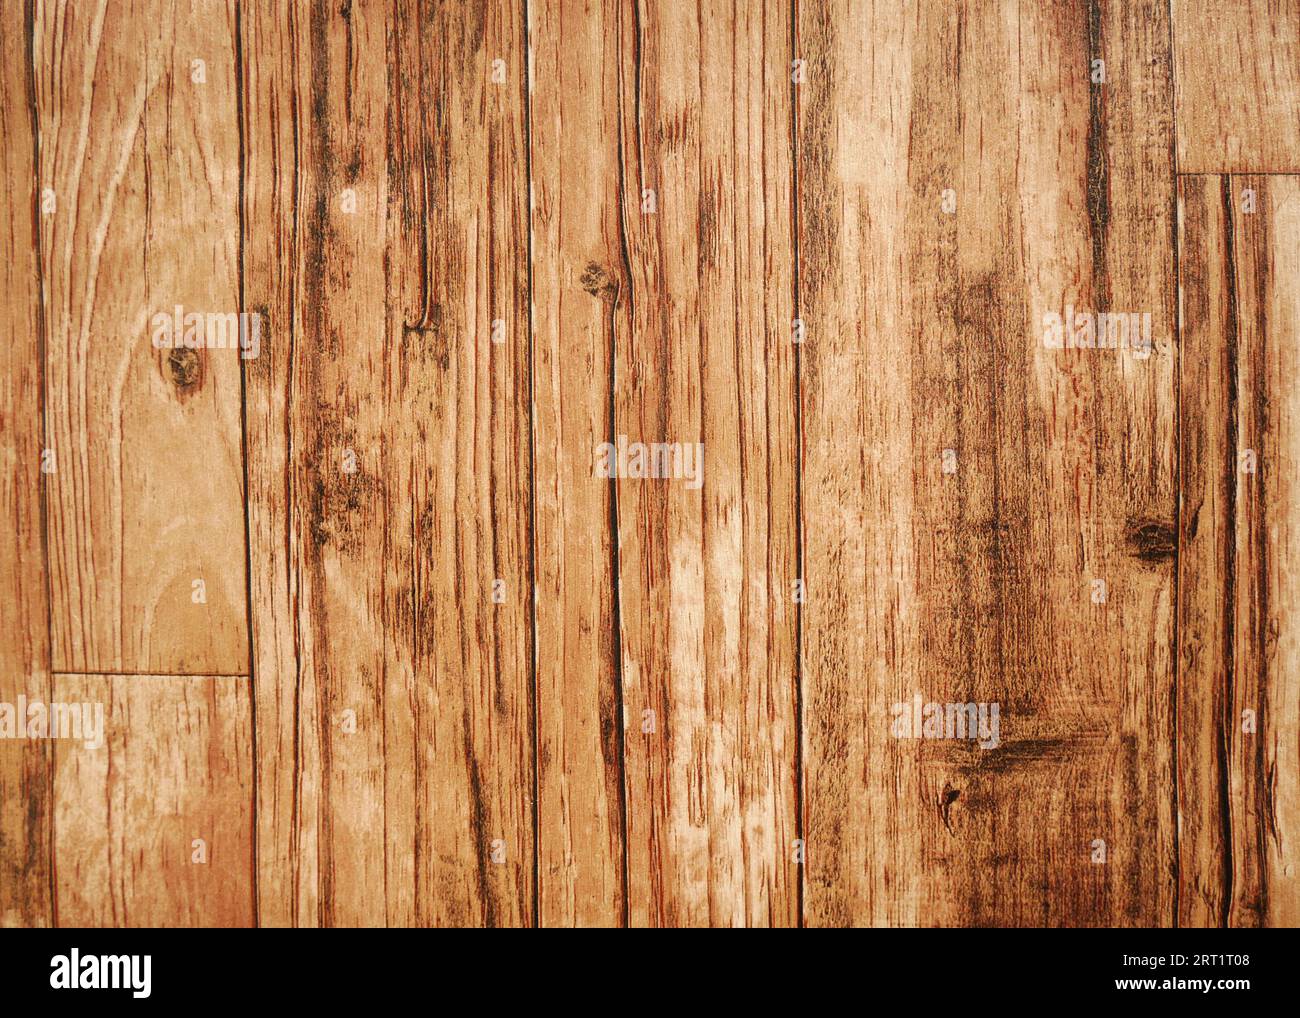 Brauner Holztexturhintergrund. Die Holzvertäfelung hat ein wunderschönes dunkles Muster, die Textur von Hartholzböden. Stockfoto